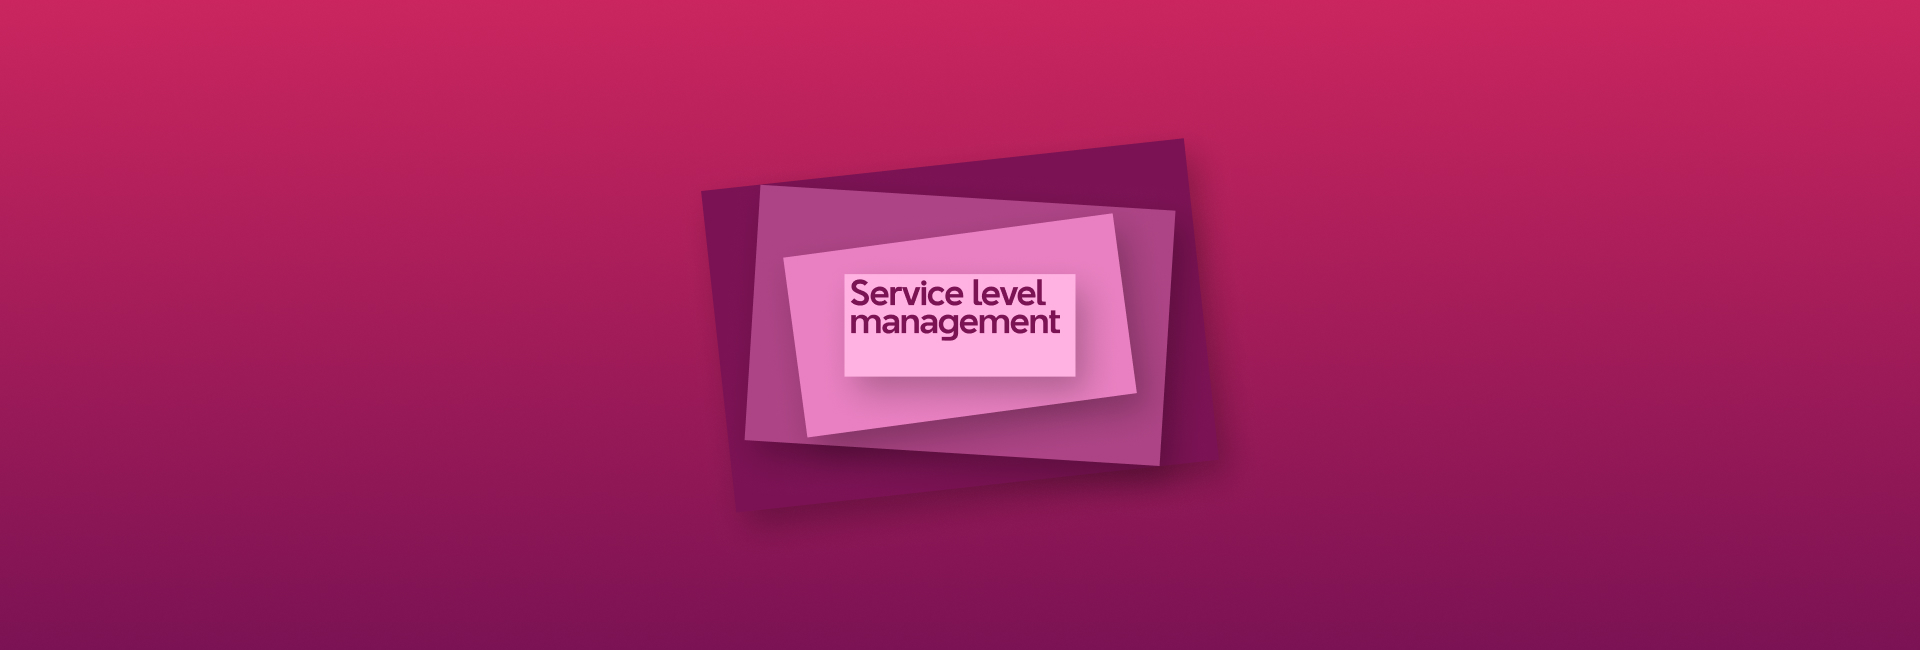 Quản lý dịch vụ theo cấp độ - Service Level Management và Quản lý mong đợi của khách hàng - Managing Customer Expectations